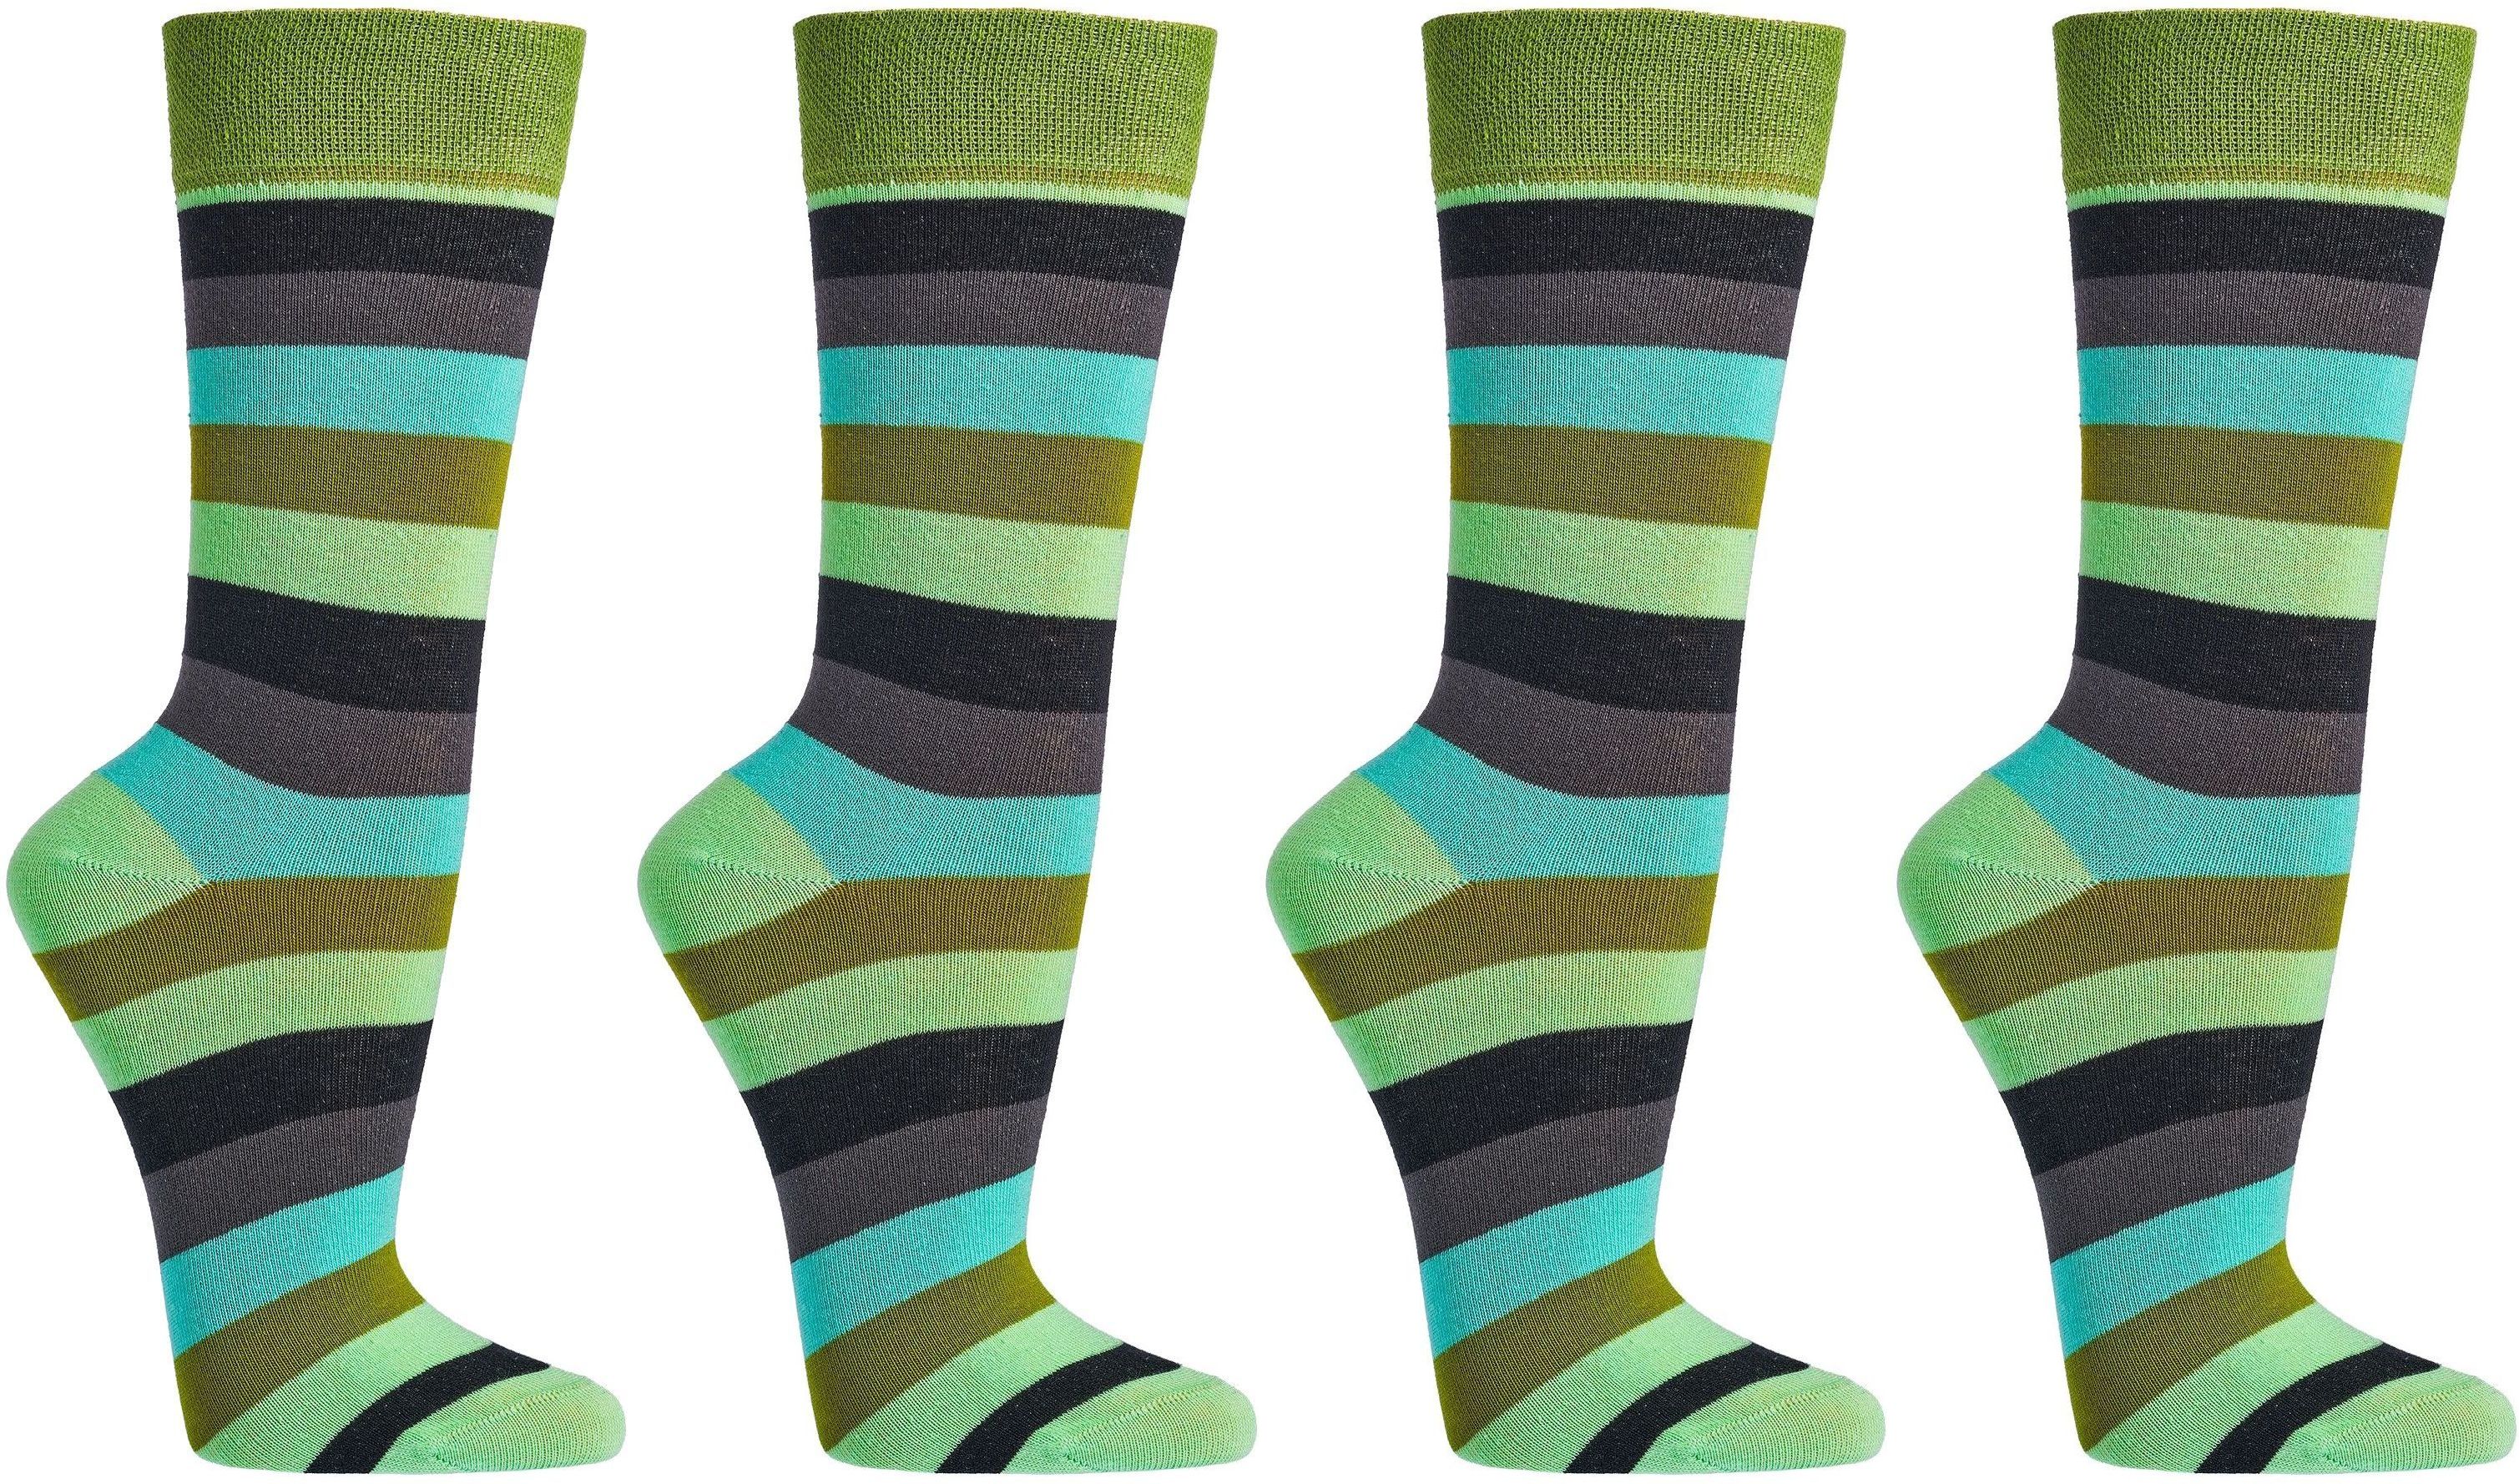 DAMEN Trend-Socken Bio Baumwolle für Teenager, Damen und Herren 2 oder 4 Paar